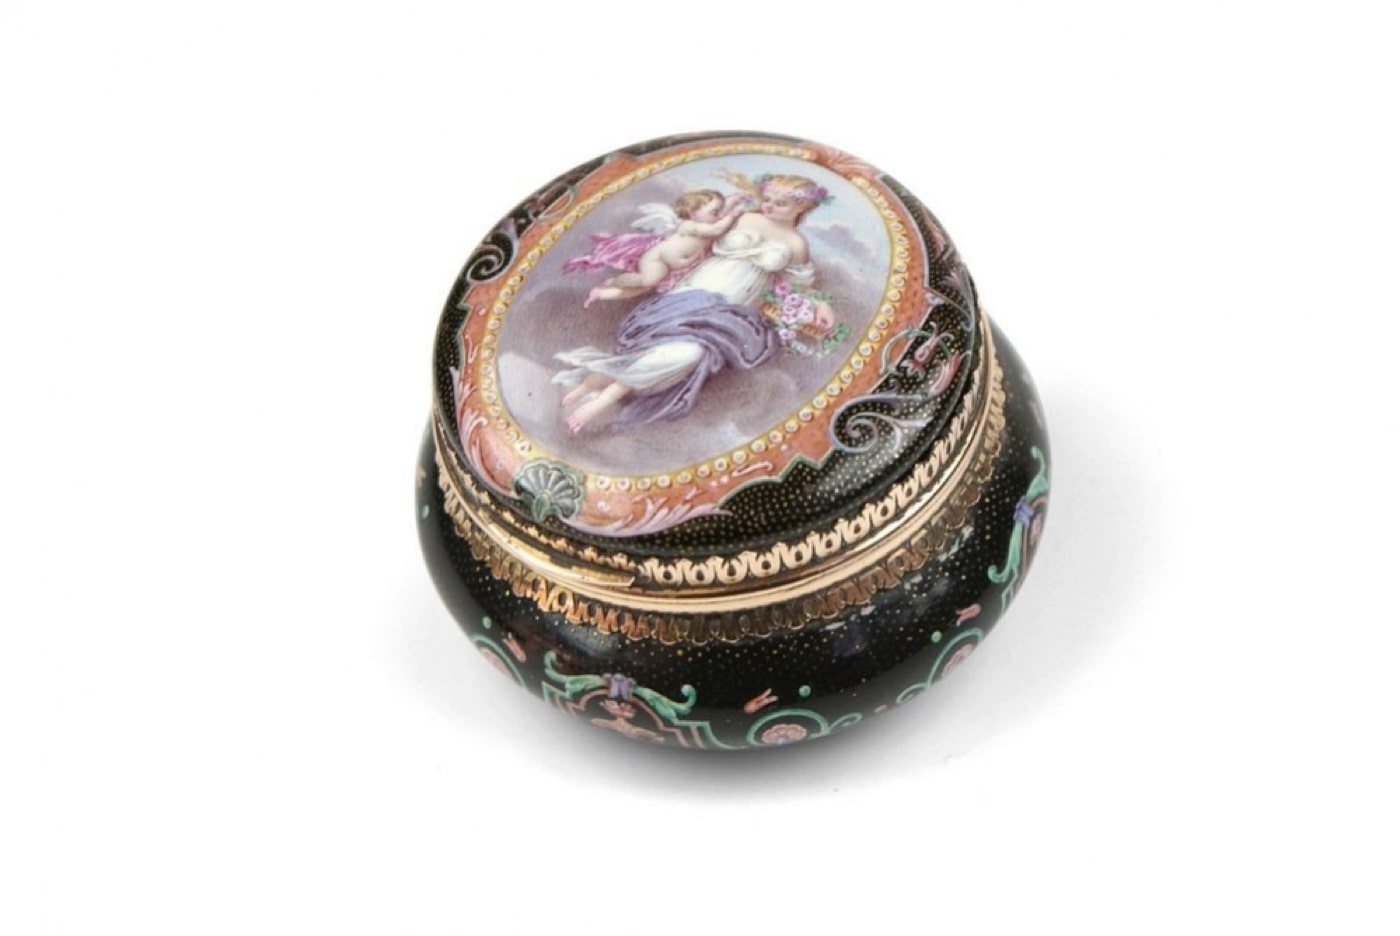 Gold-powder-box-Violettes-Paris-around-1860